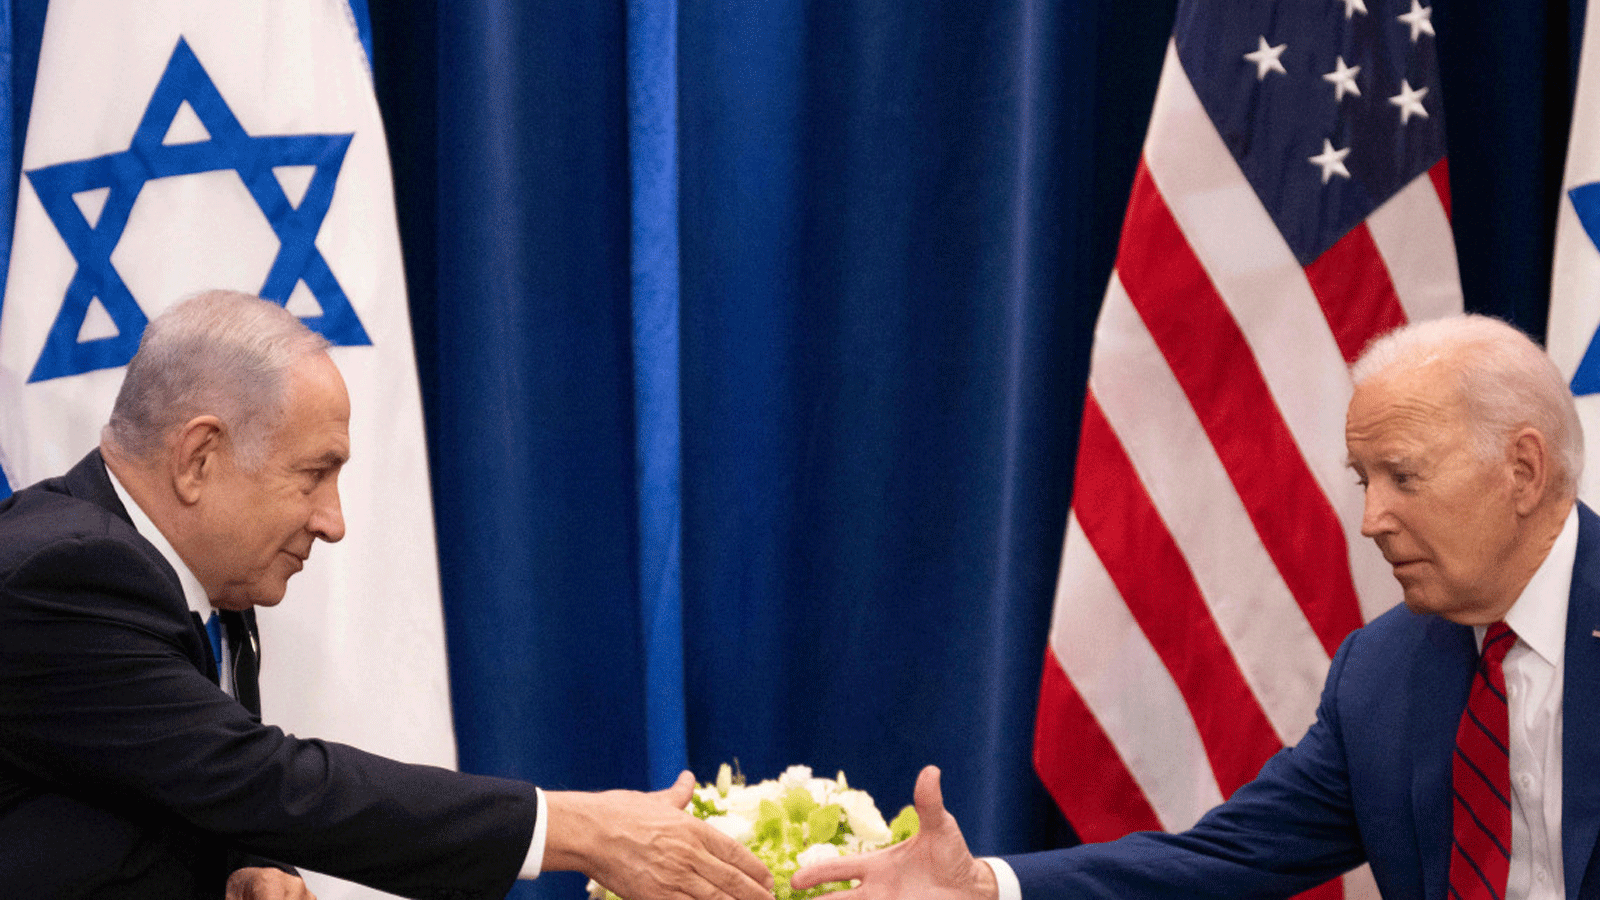 مصافحة بين الرئيس الأميركي جو بايدن ورئيس وزراء إسرائيل بنيامين نتانياهو